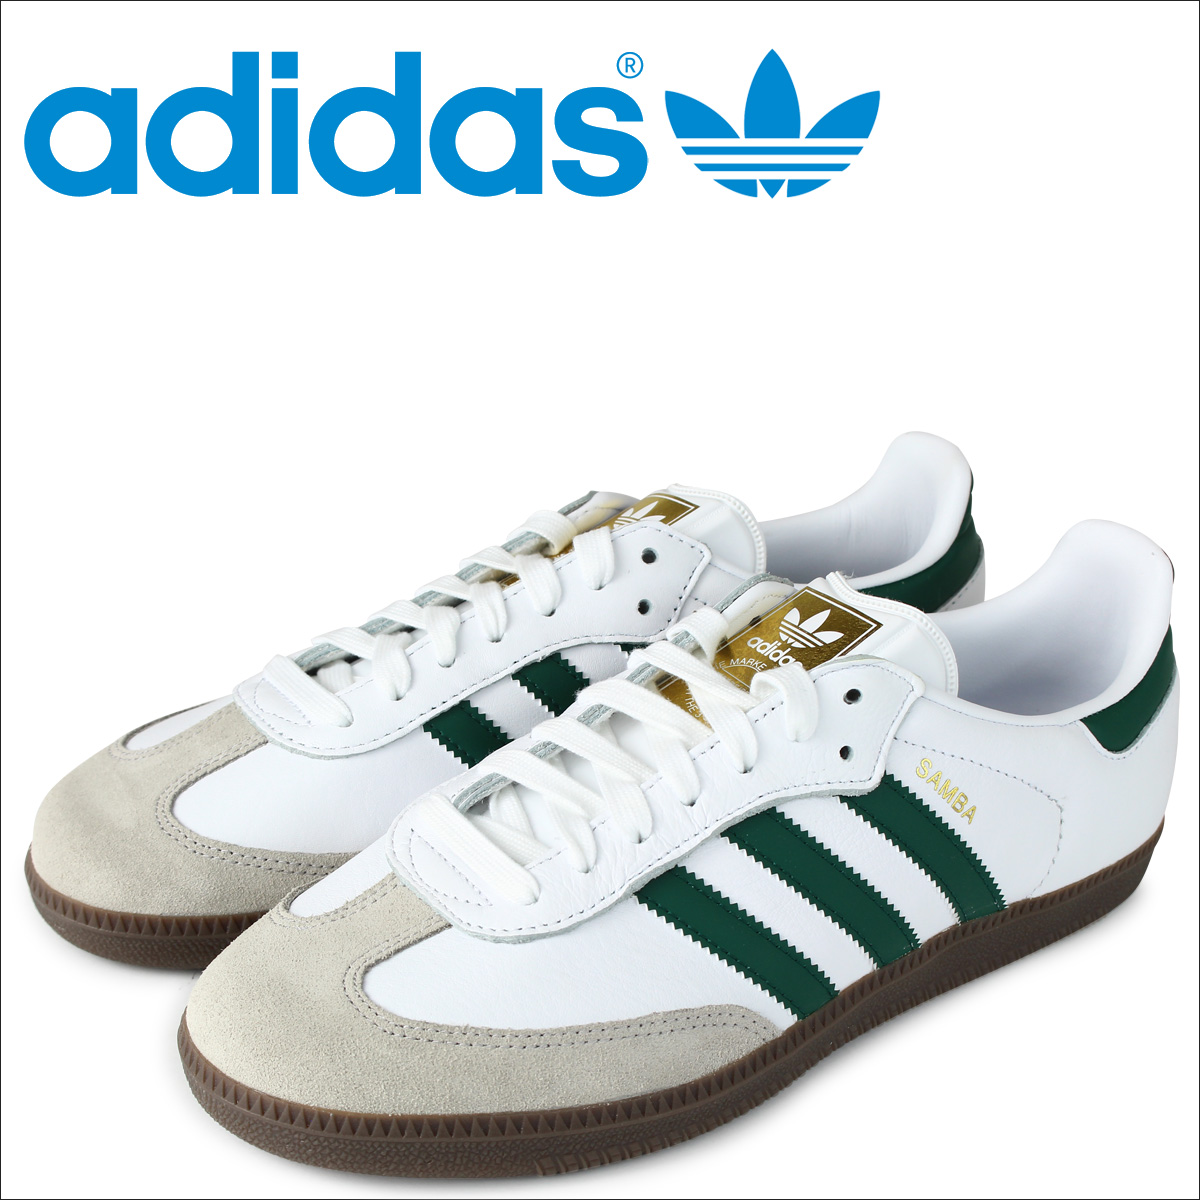 adidas samba shoes white